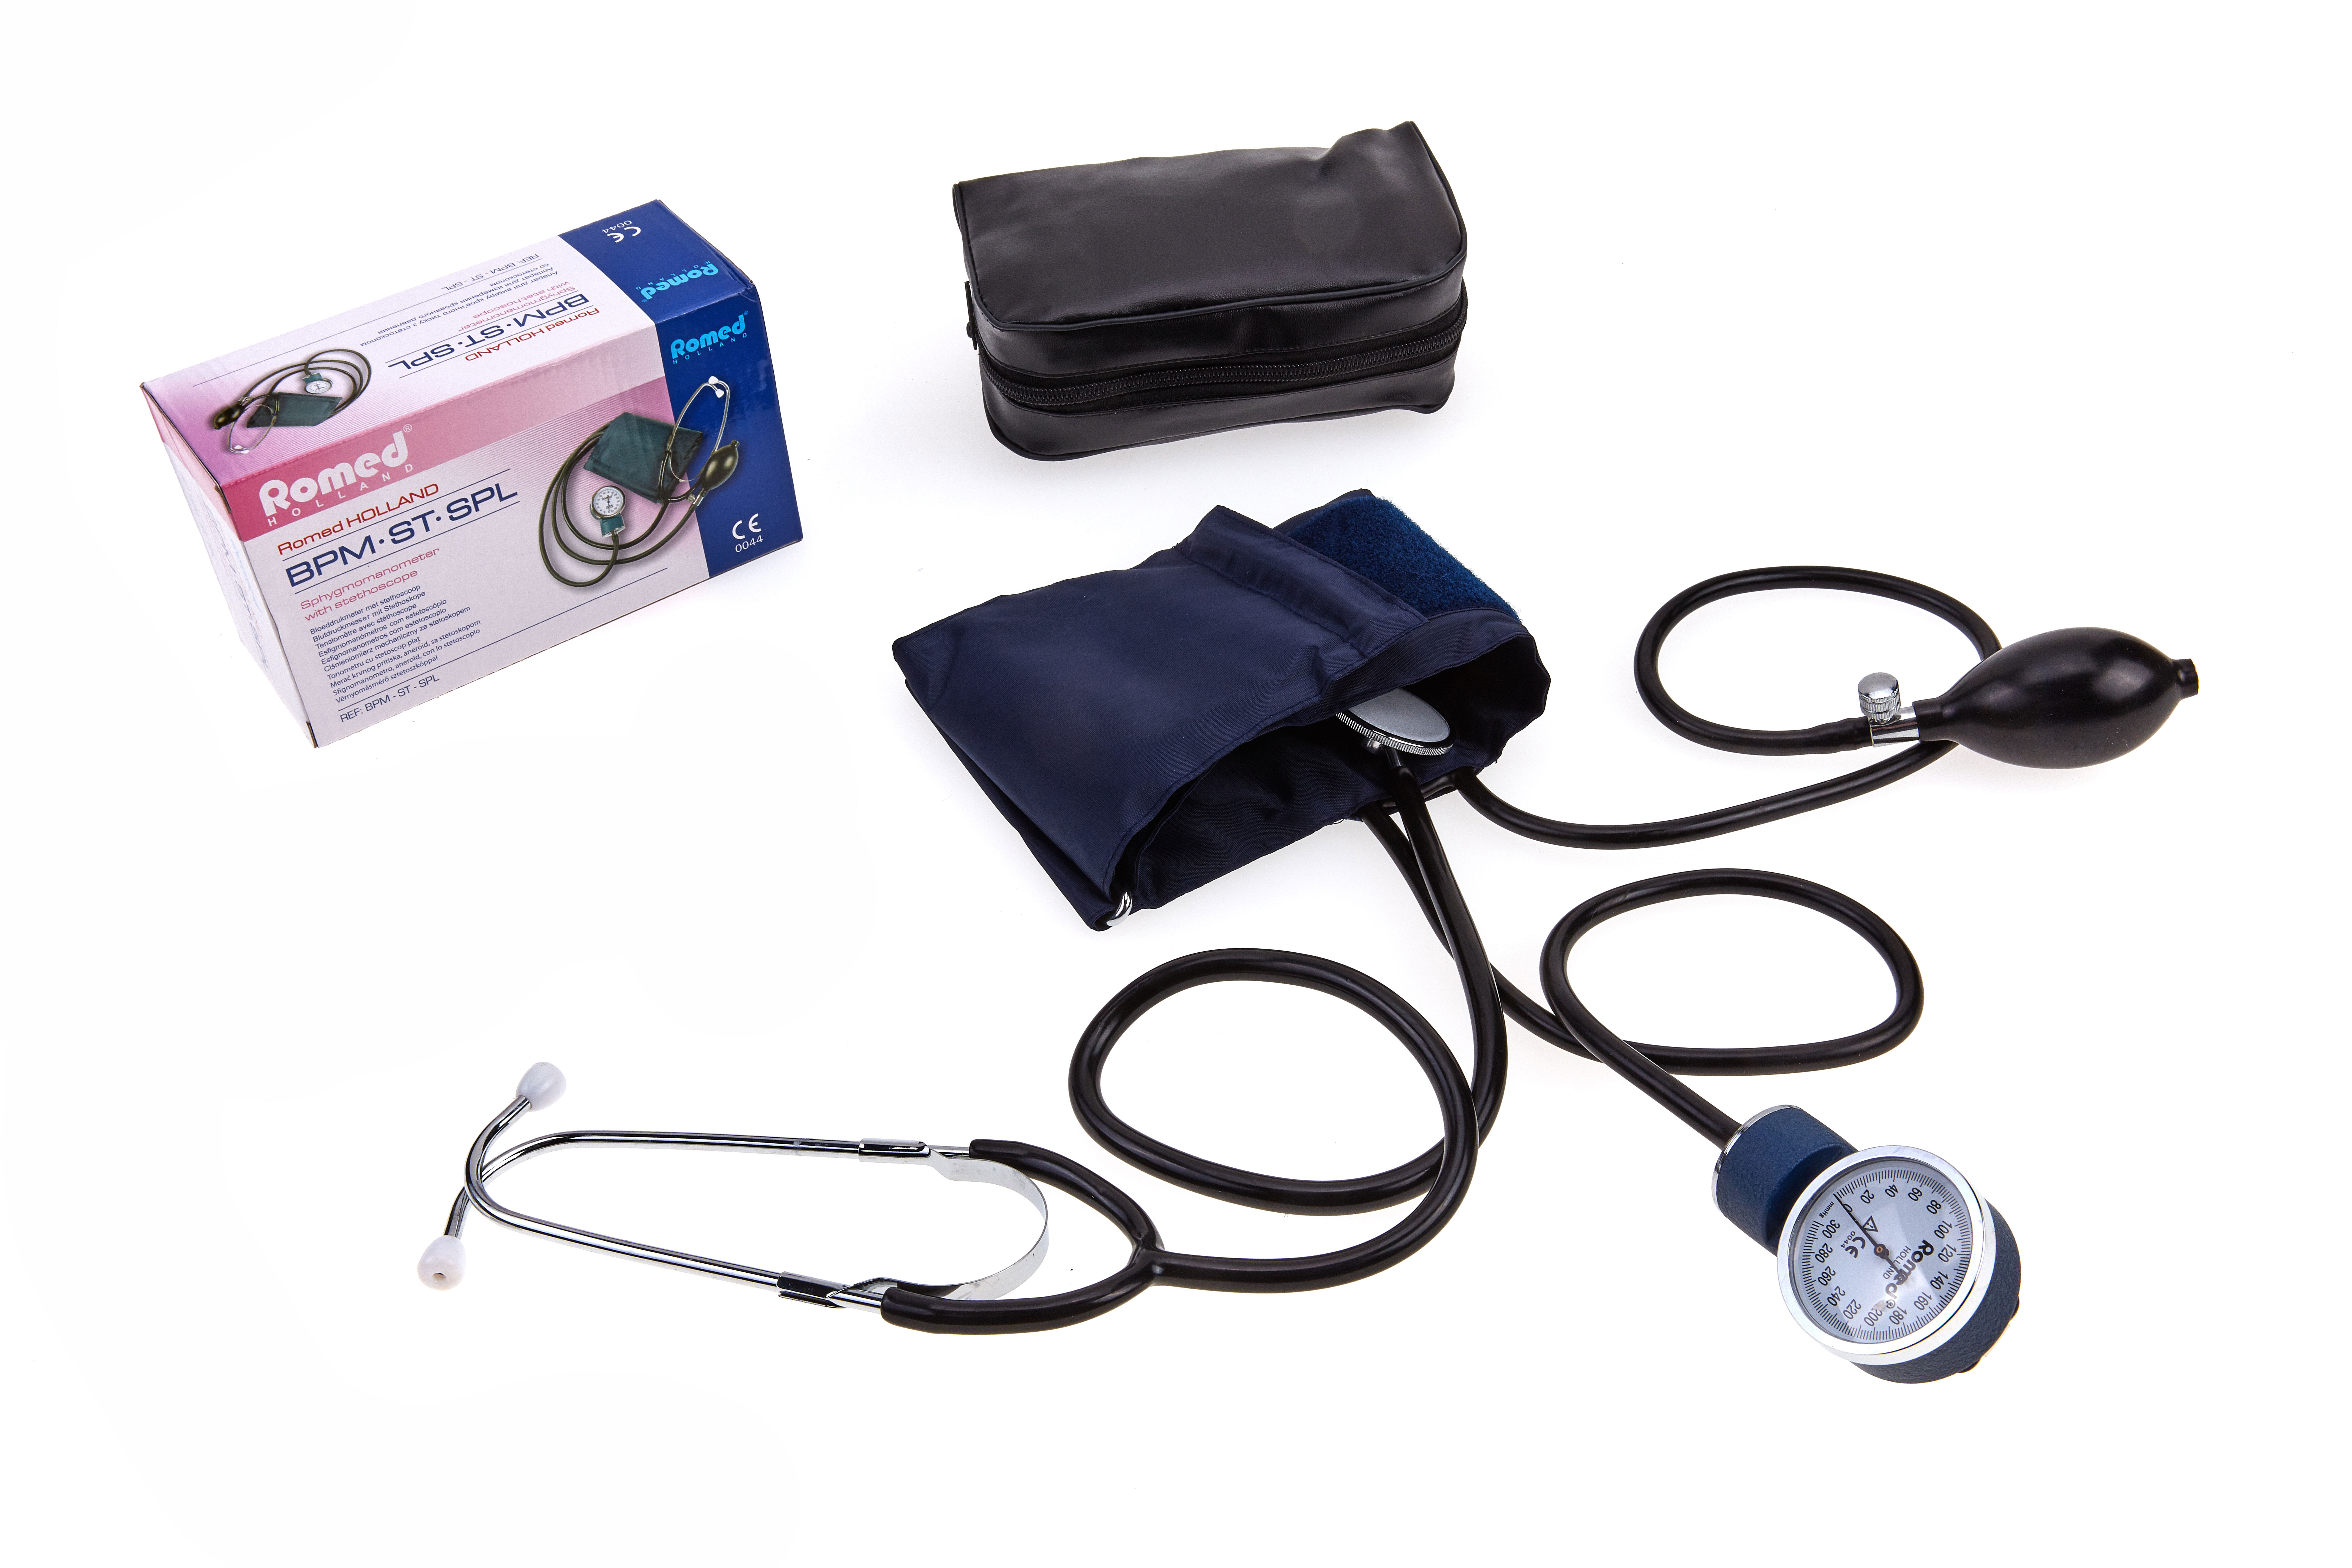 BPM-ST-SPL Romed Blutdruckmesser mit Stethoskop (Flachkopf), pro Stück in einer Schachtel, 20 Stück im Karton.